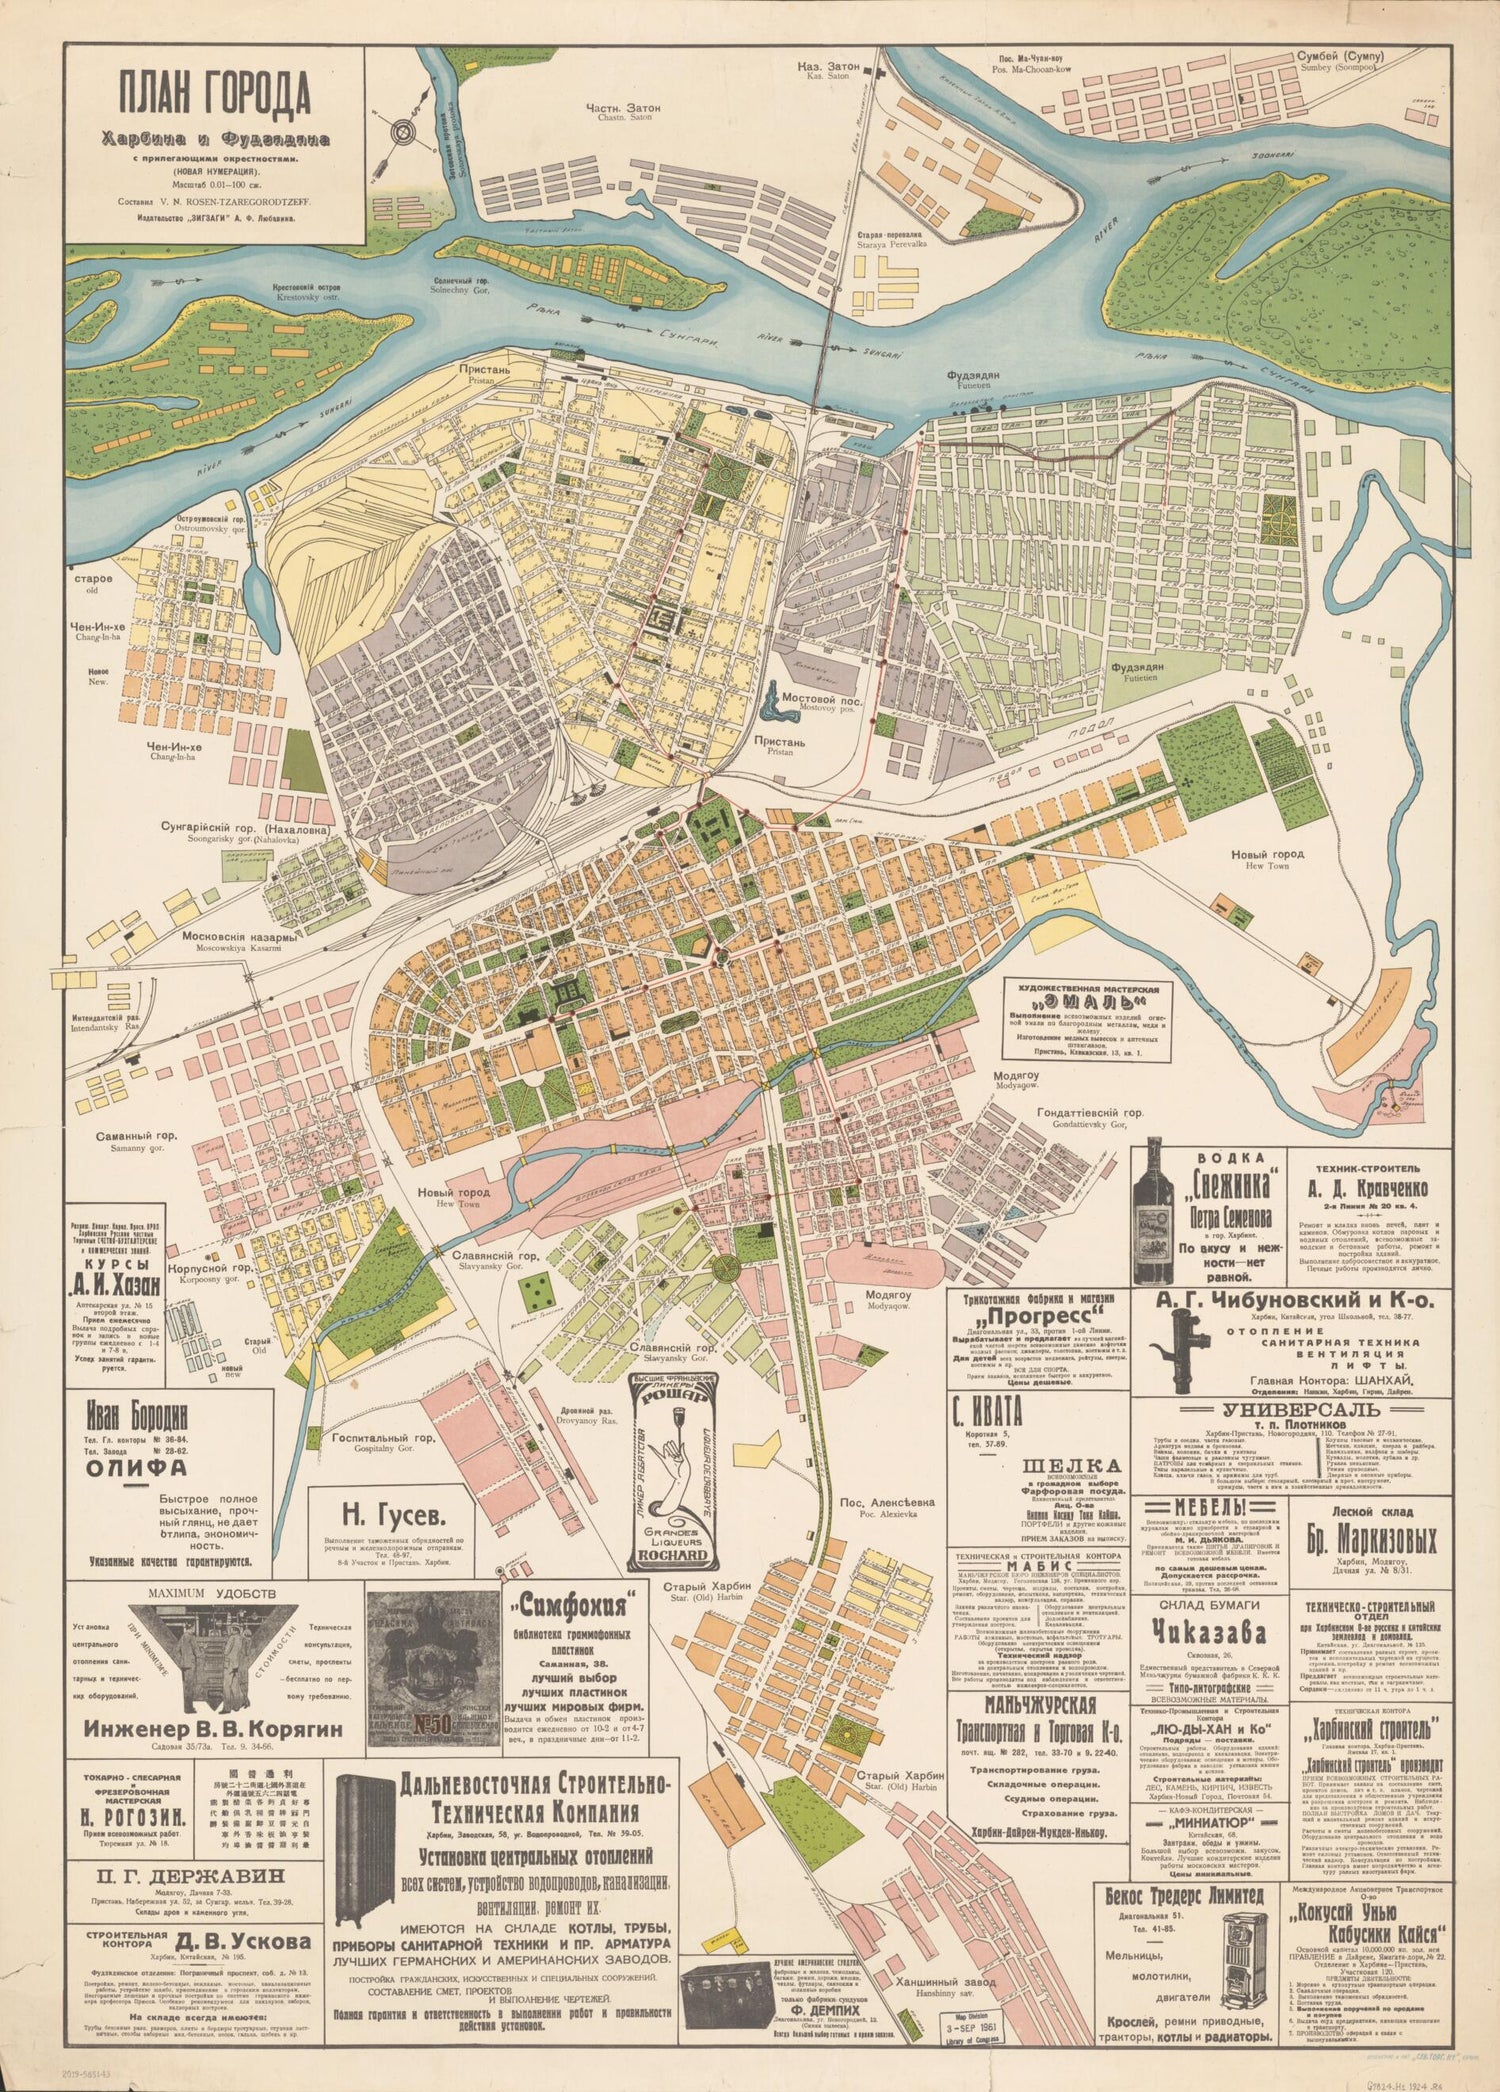 This old map of Plan Goroda Kharbina I Fudzi︠a︡di︠a︡na S Prilegai︠u︡shchimi Okrestnosti︠a︡mi : (novai︠a︡ Numerat︠s︡ii︠a︡) from 1924 was created by V. N. Tzaregorodtzeff in 1924